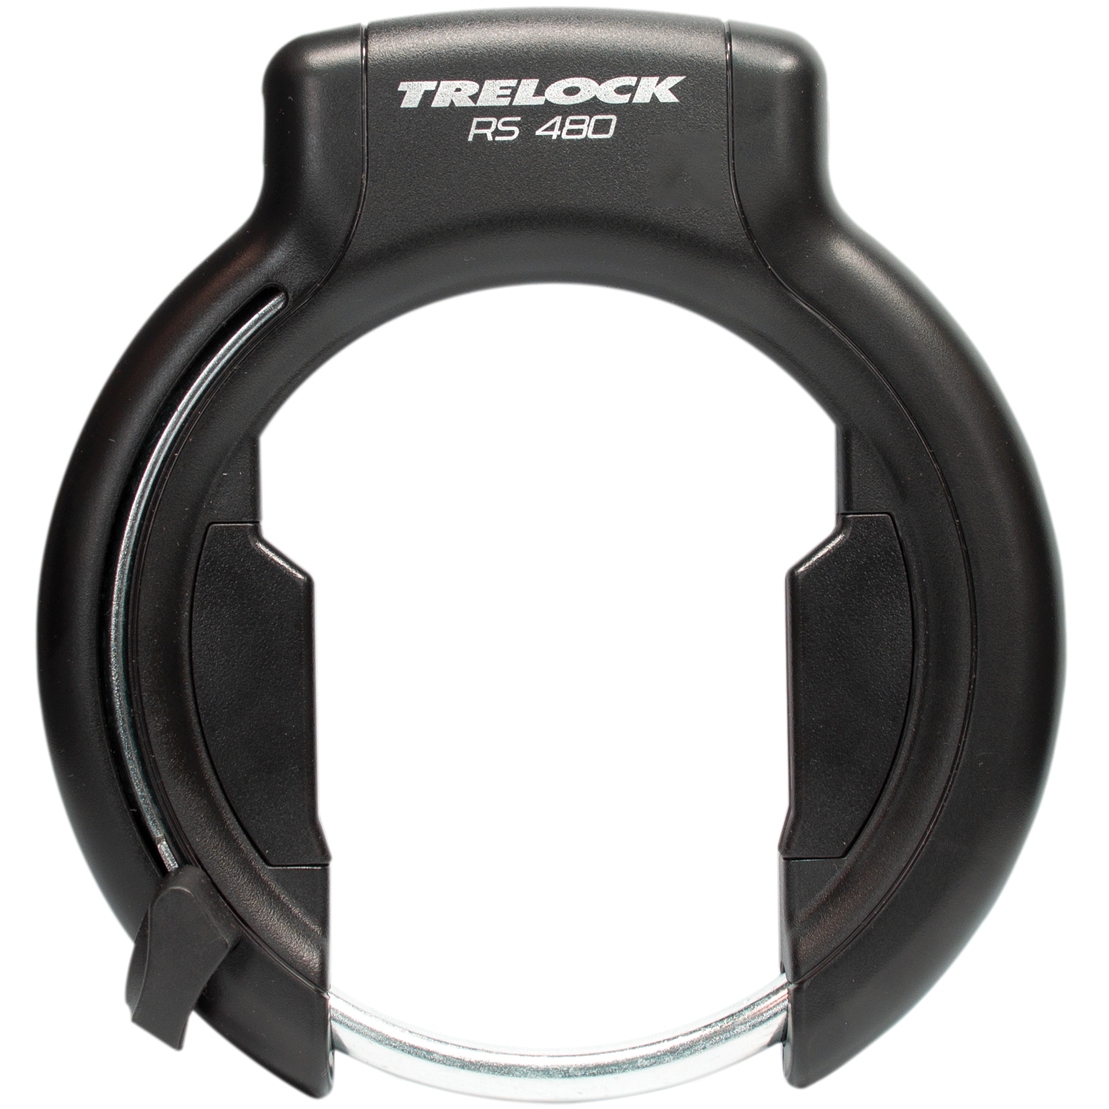 Immagine prodotto da Trelock RS 480 P-O-C XL AZ Antifurto da Telaio